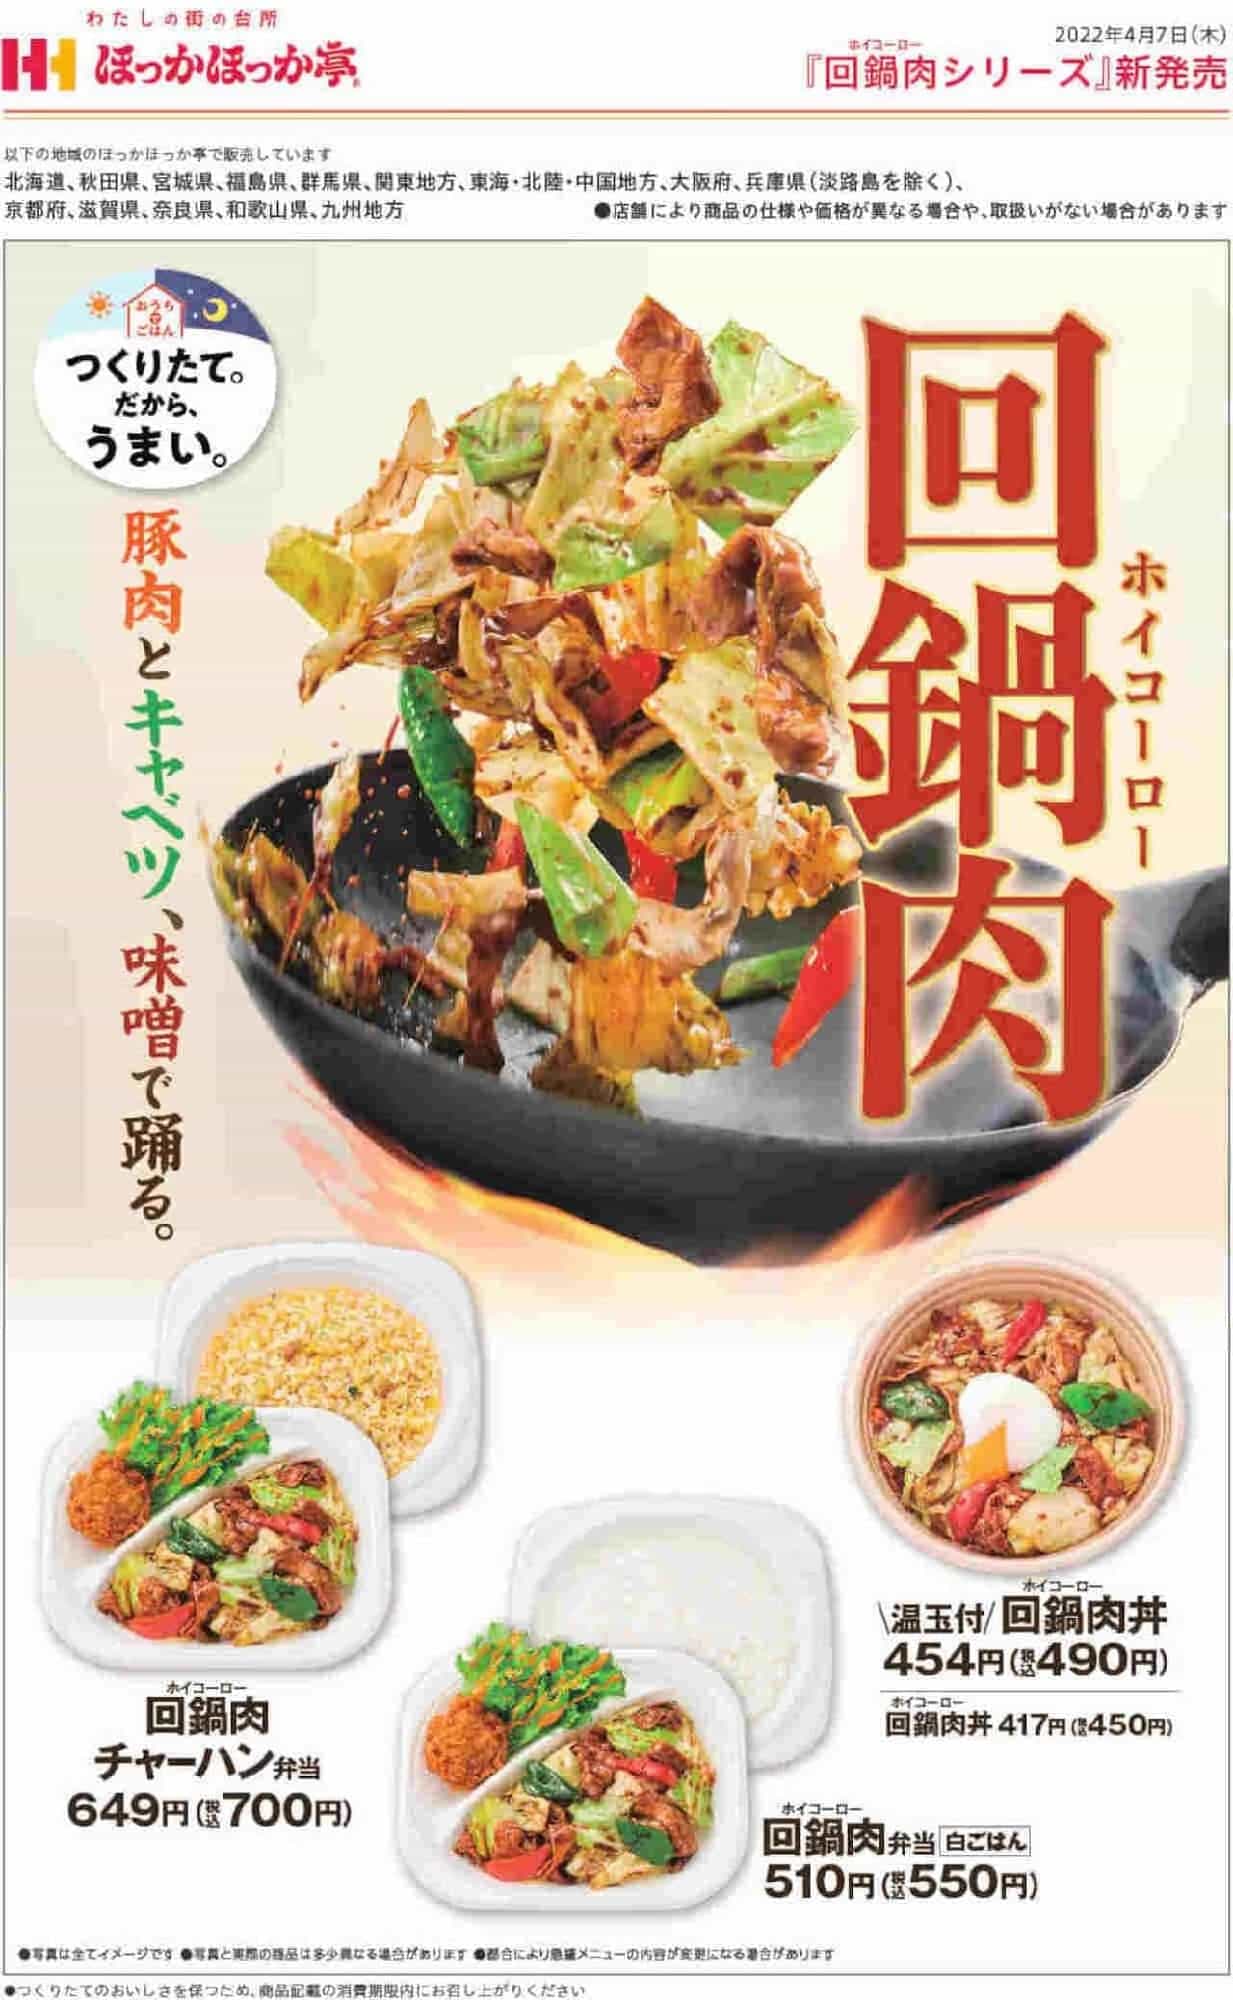 HOKKAHOKKA TEI "Kai-Nabe-Niku Don", "Kai-Nabe-Niku Bento", "Kai-Nabe-Niku Don with On-tama", "Kai-Nabe-Niku Fried Rice Bento".